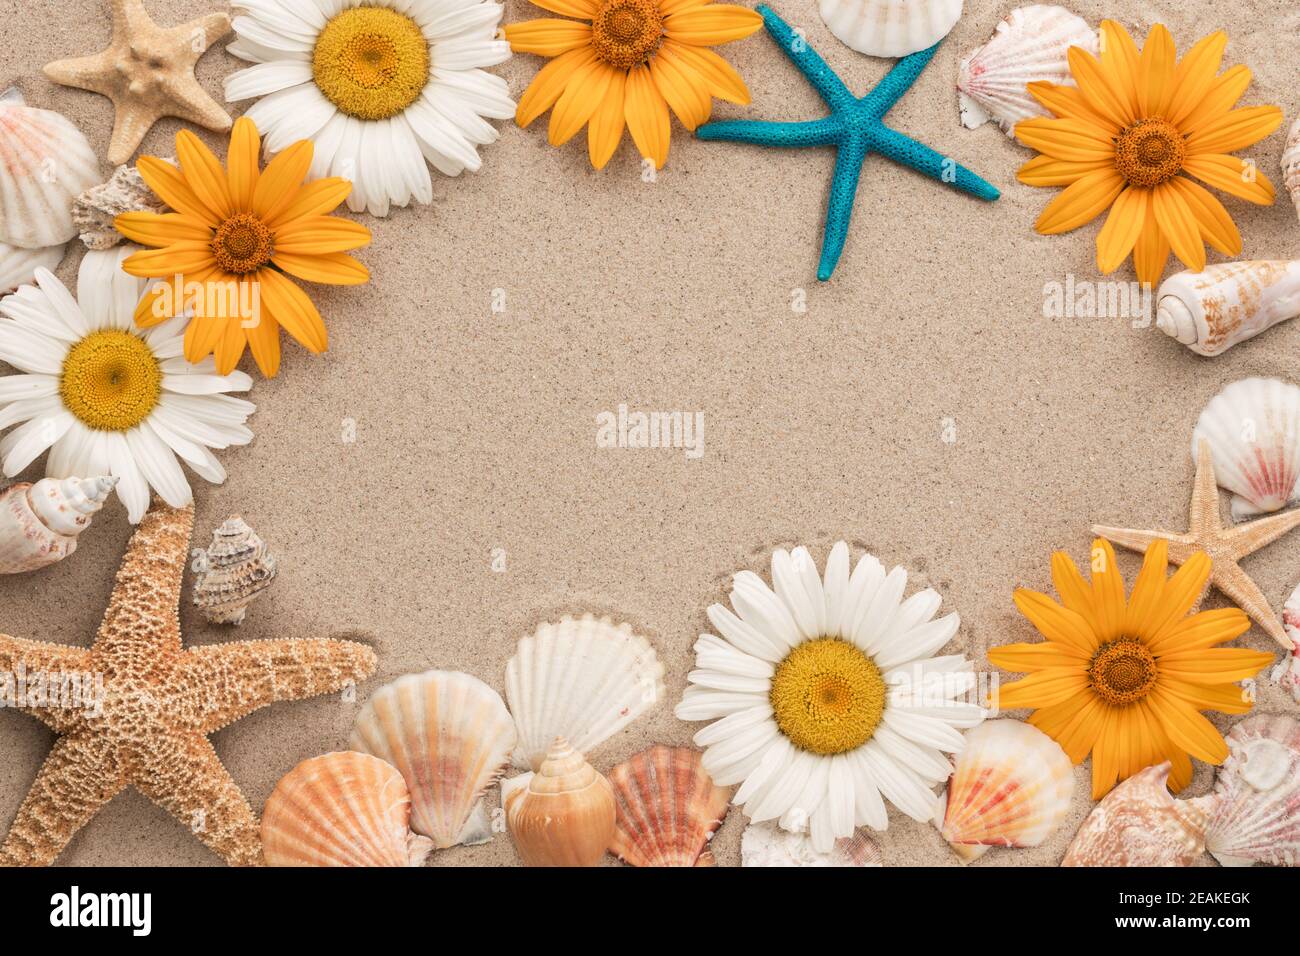 Magnifique cadre de chamomiles, coquillages, étoiles de mer sur le sable. Banque D'Images